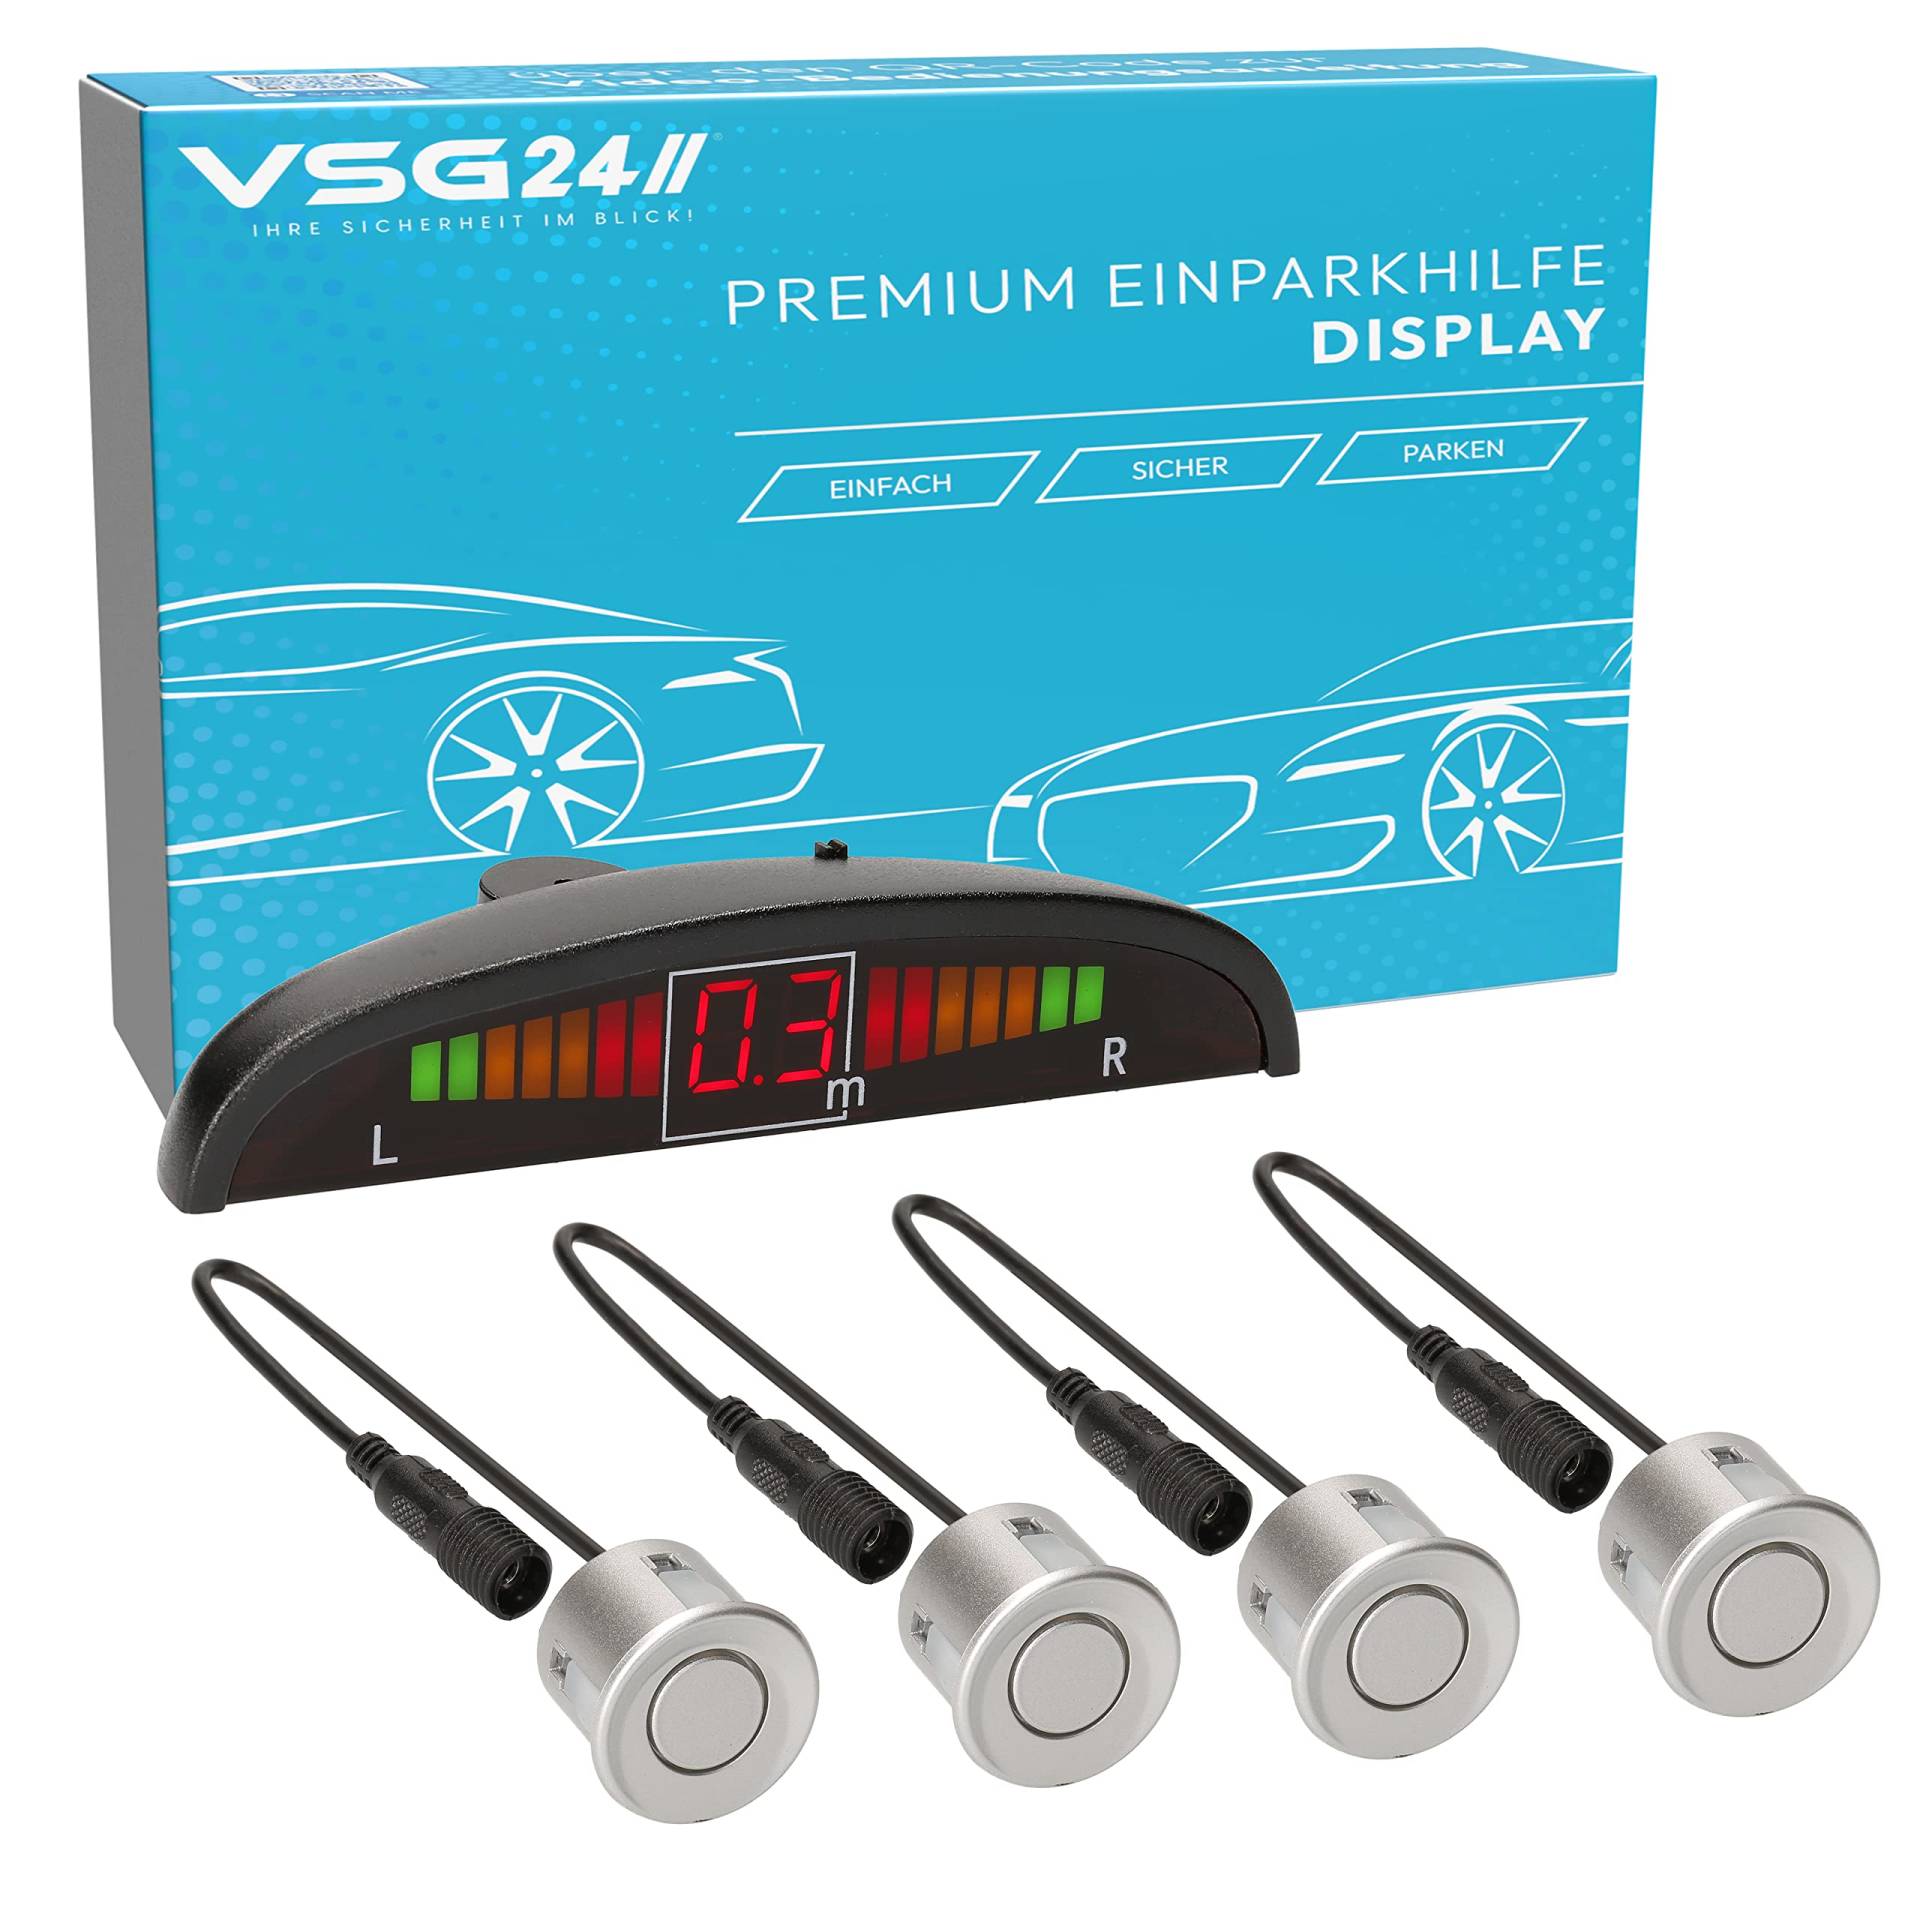 VSG24 Premium Einparkhilfe hinten mit Display zum nachrüsten am Auto, PDC Parksensoren hinten mit Stecksystem für einfachste Montage - 4 Rückfahrwarner Sensoren Parkhilfe Nachrüstsatz Silber von VSG